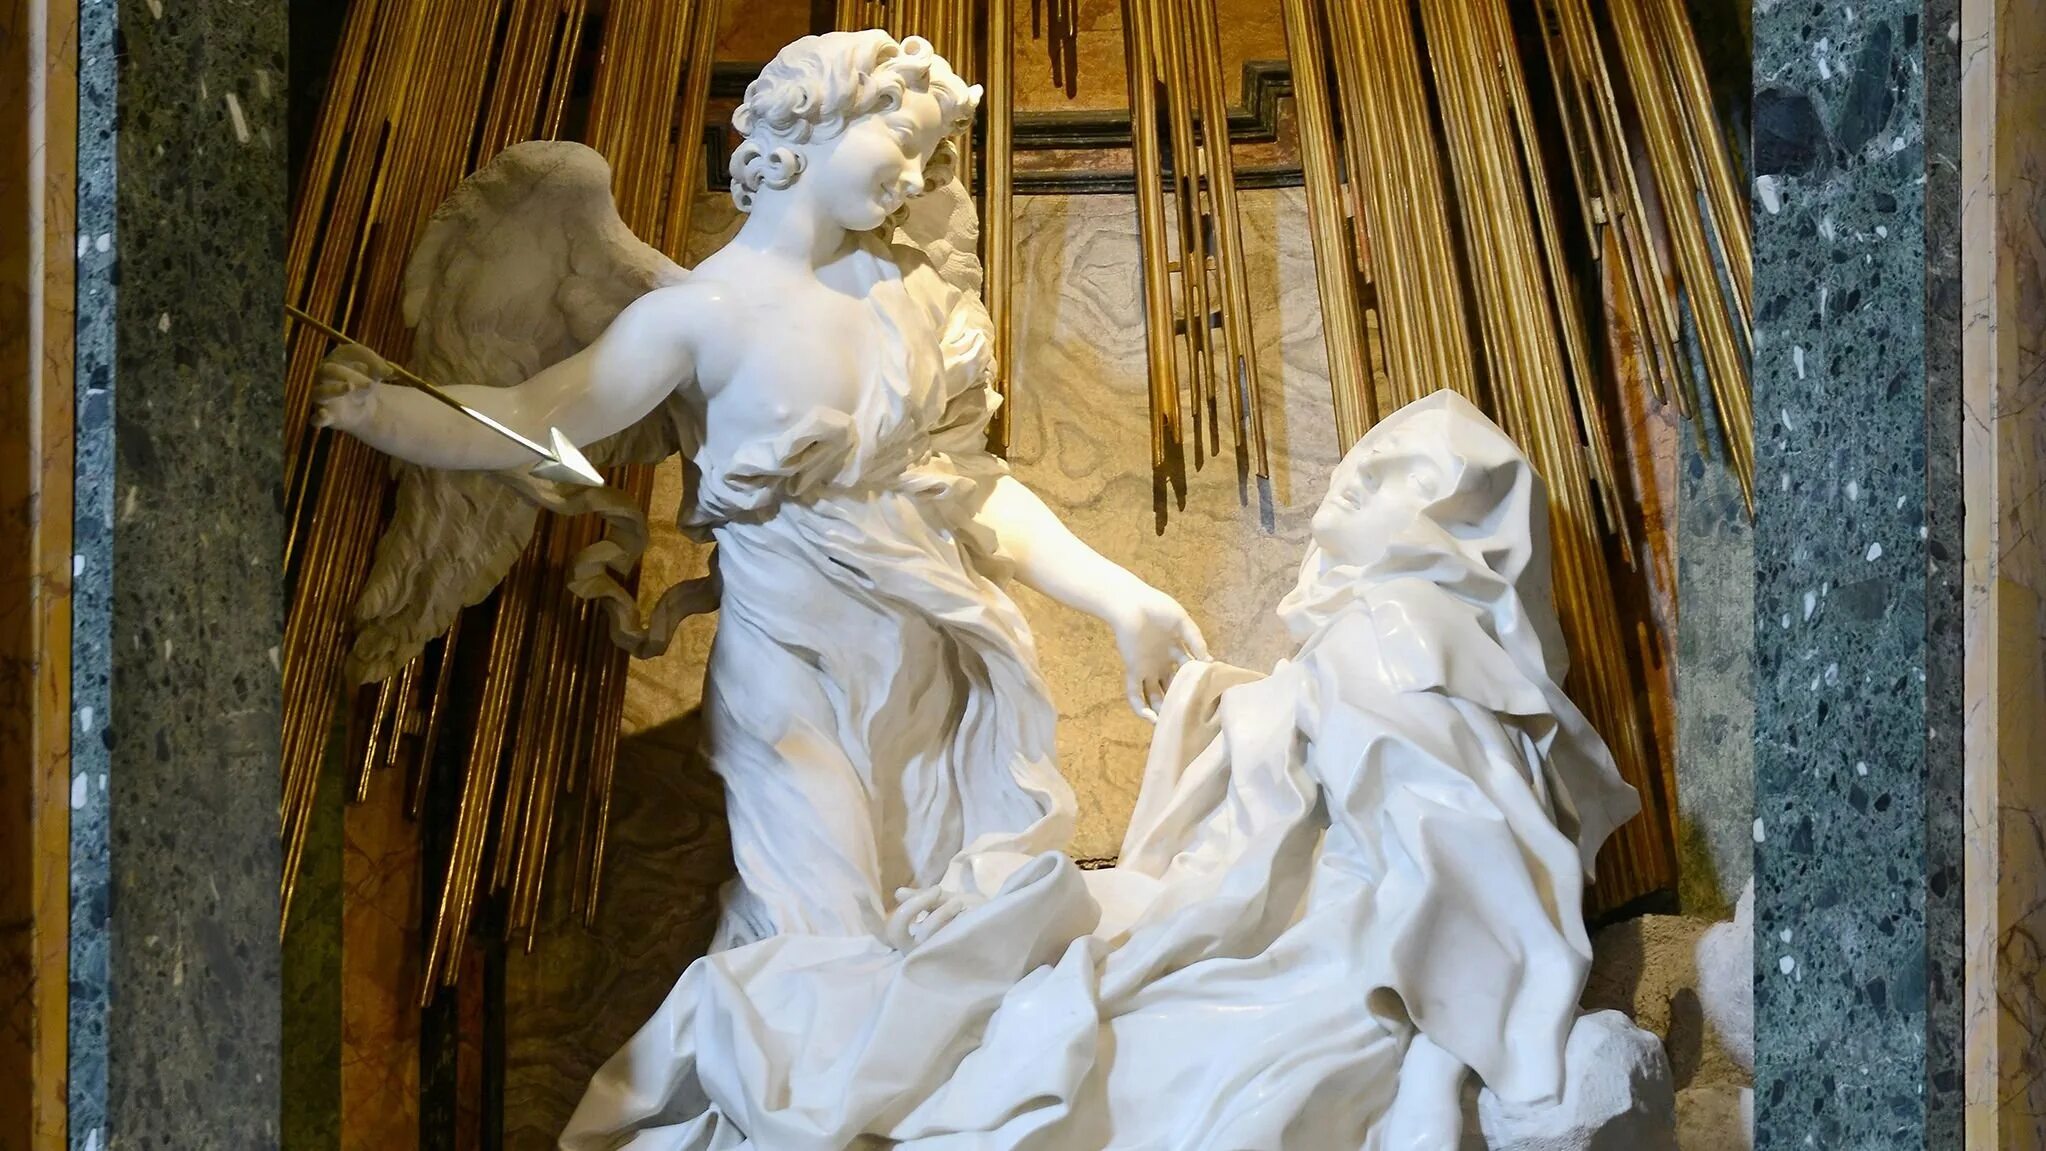 Экстаз Святой Терезы Бернини. Лоренцо Бернини экстаз Святой Терезы. Скульптура Святой Терезы Бернини. Джованни Лоренцо Бернини скульптура экстаз Святой Терезы.